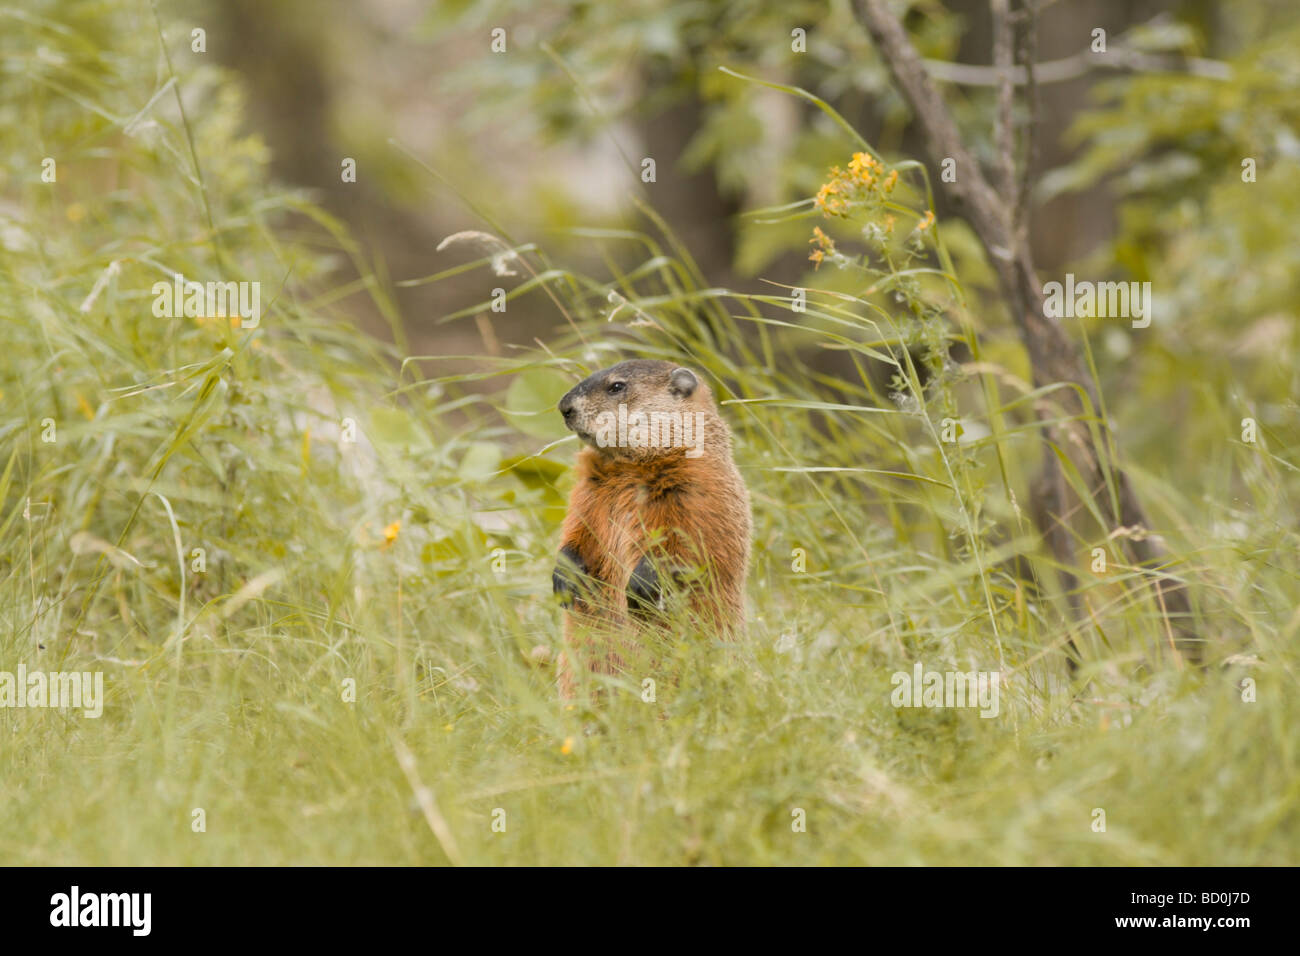 Curioso marmotta o marmotta in erba in Canada. Animale selvaggio nella foresta. Foto Stock